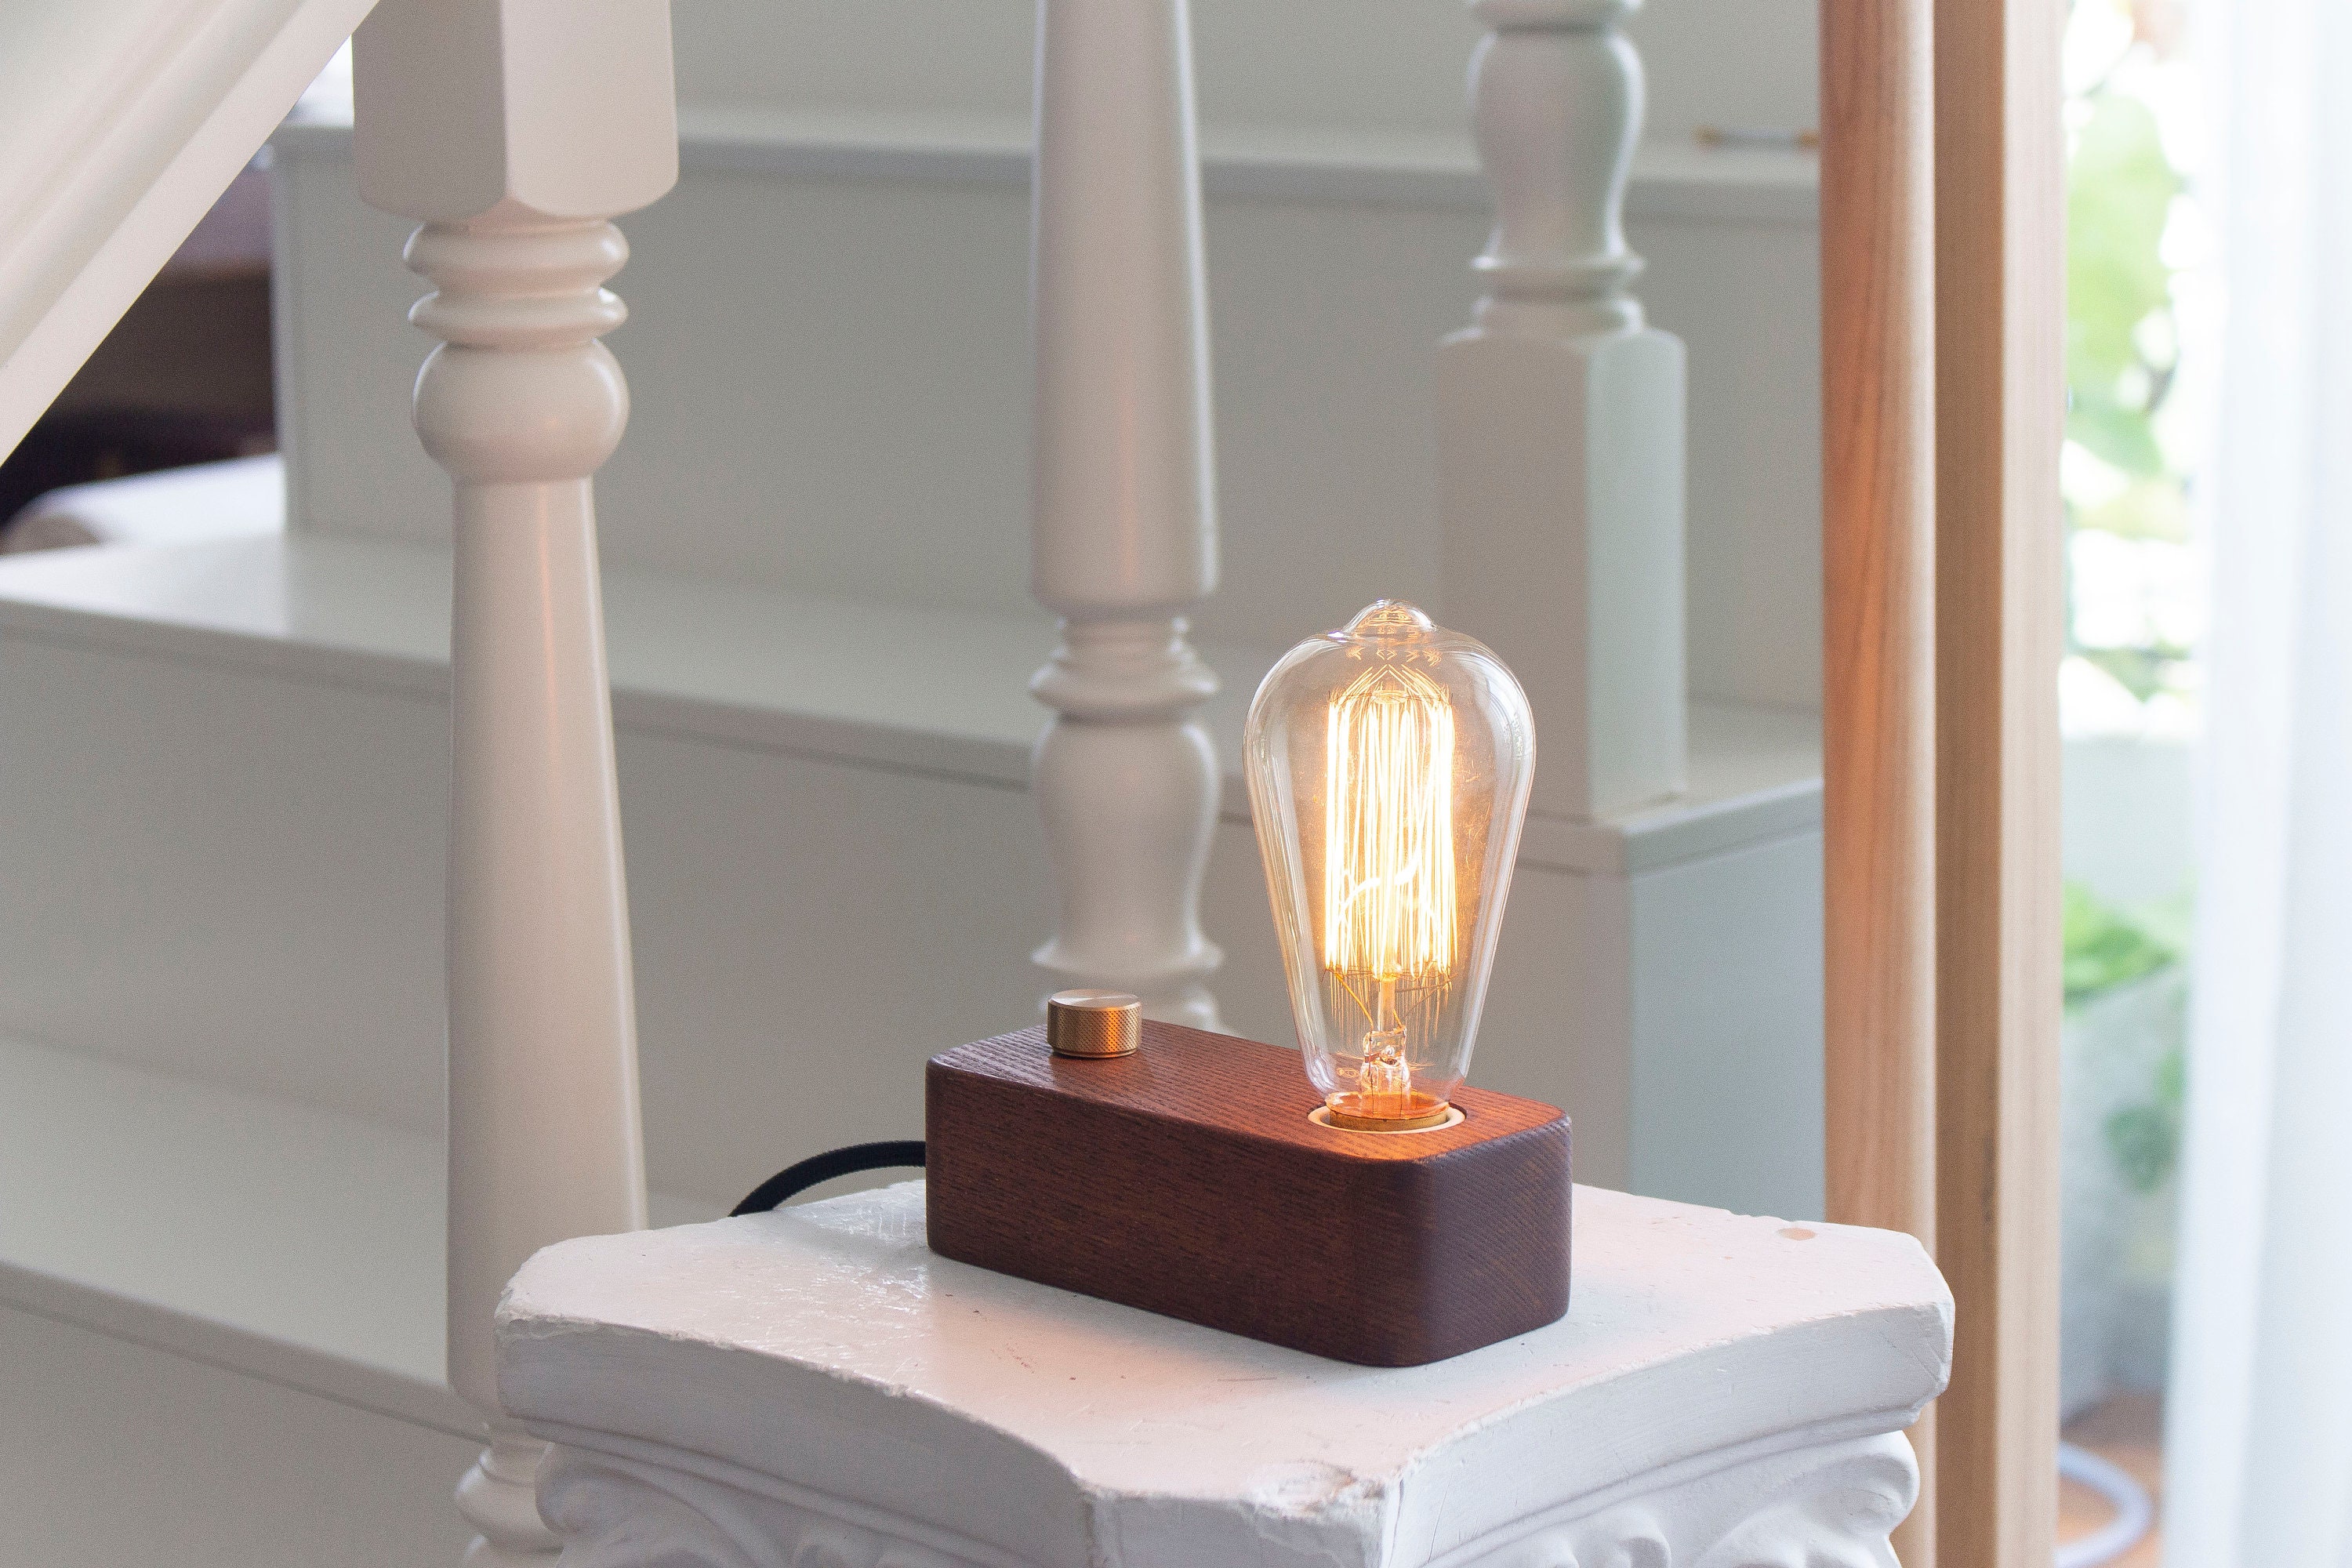 Helyo Light - La lampe d'intérieur connectée, compacte et